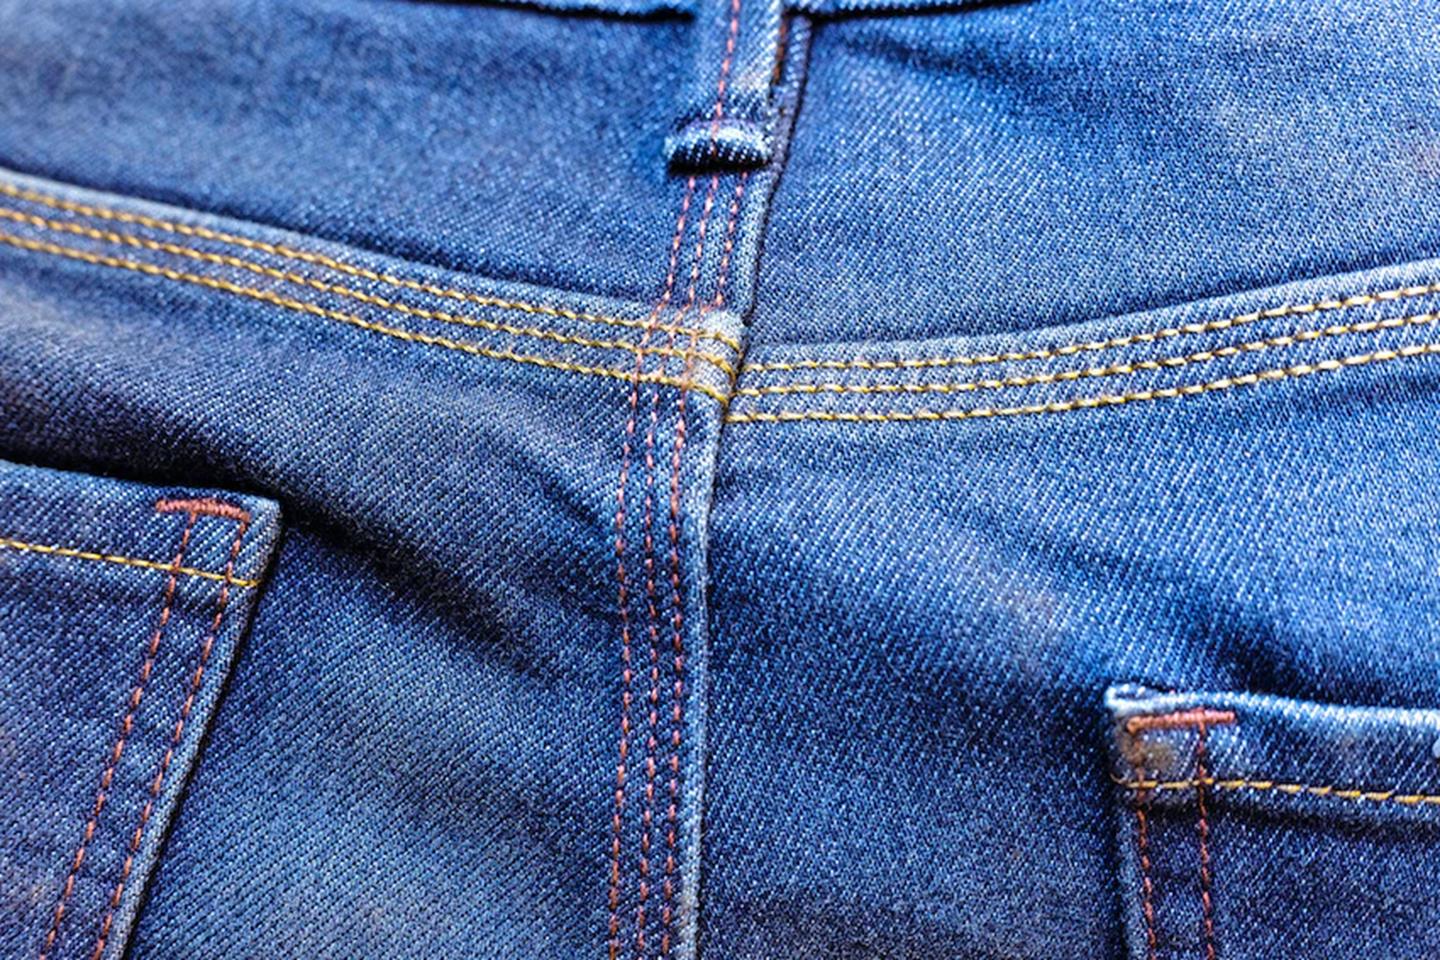 Buy KOZZAK Mens Olive Colour Skinny FIT Jeans (2998_Olive) at Amazon.in